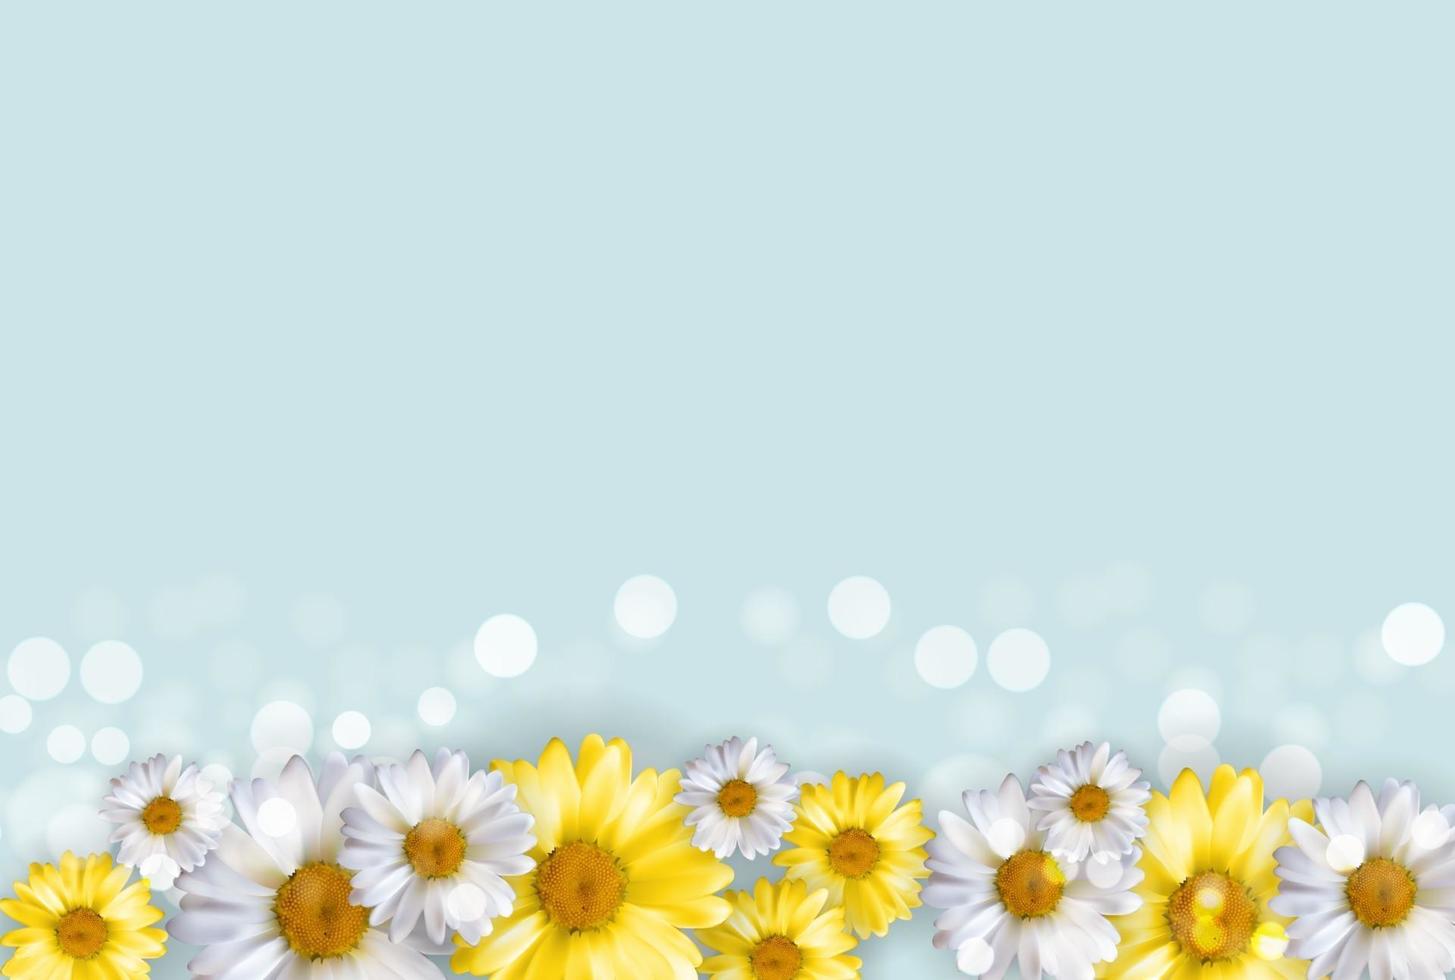 sfondo carino con fiori di camomilla. vettore